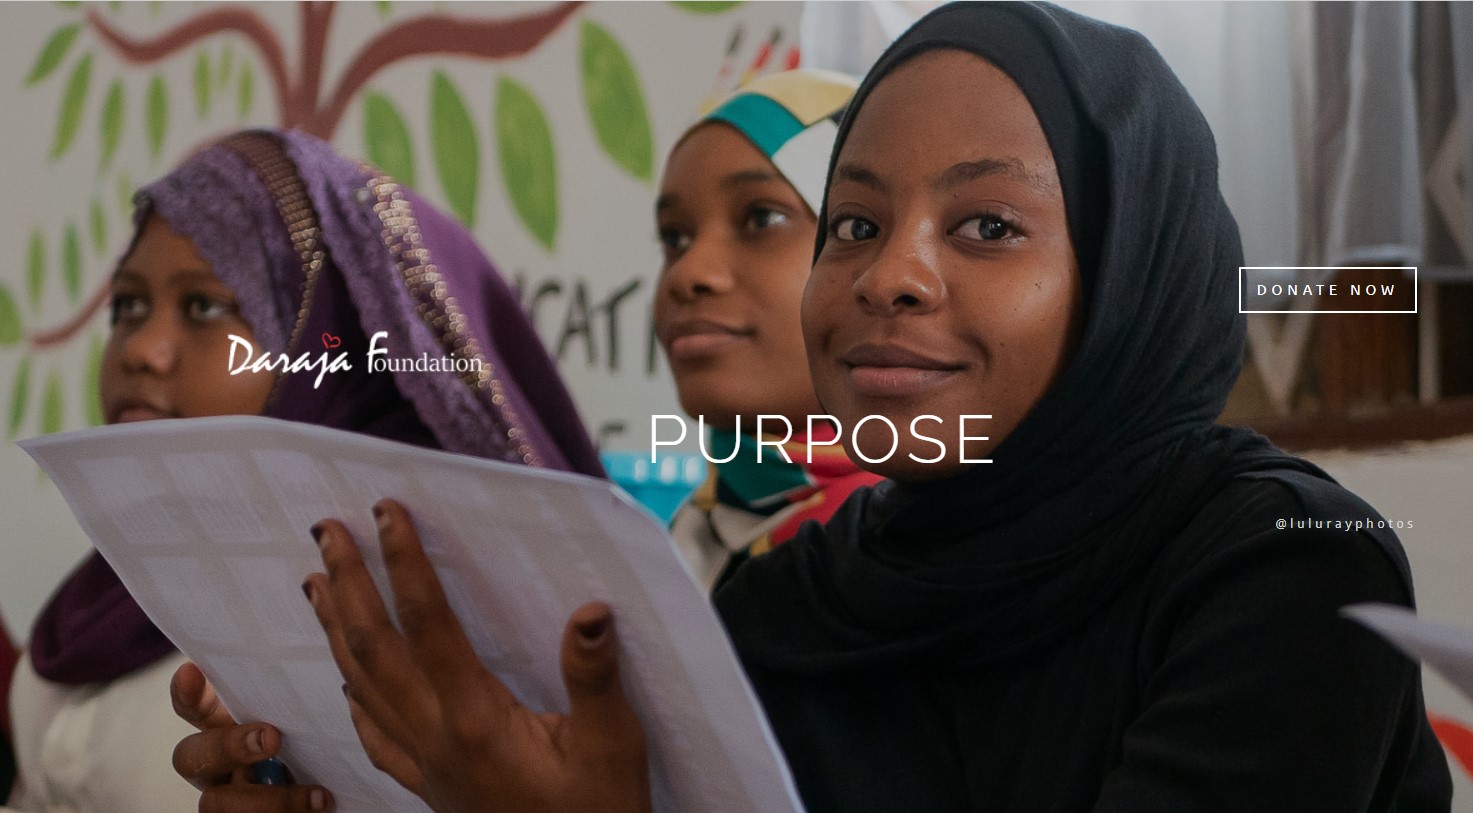 Formål: Daraja Foundation i Zanzibar - At give unge mennesker en familie og en fremtid